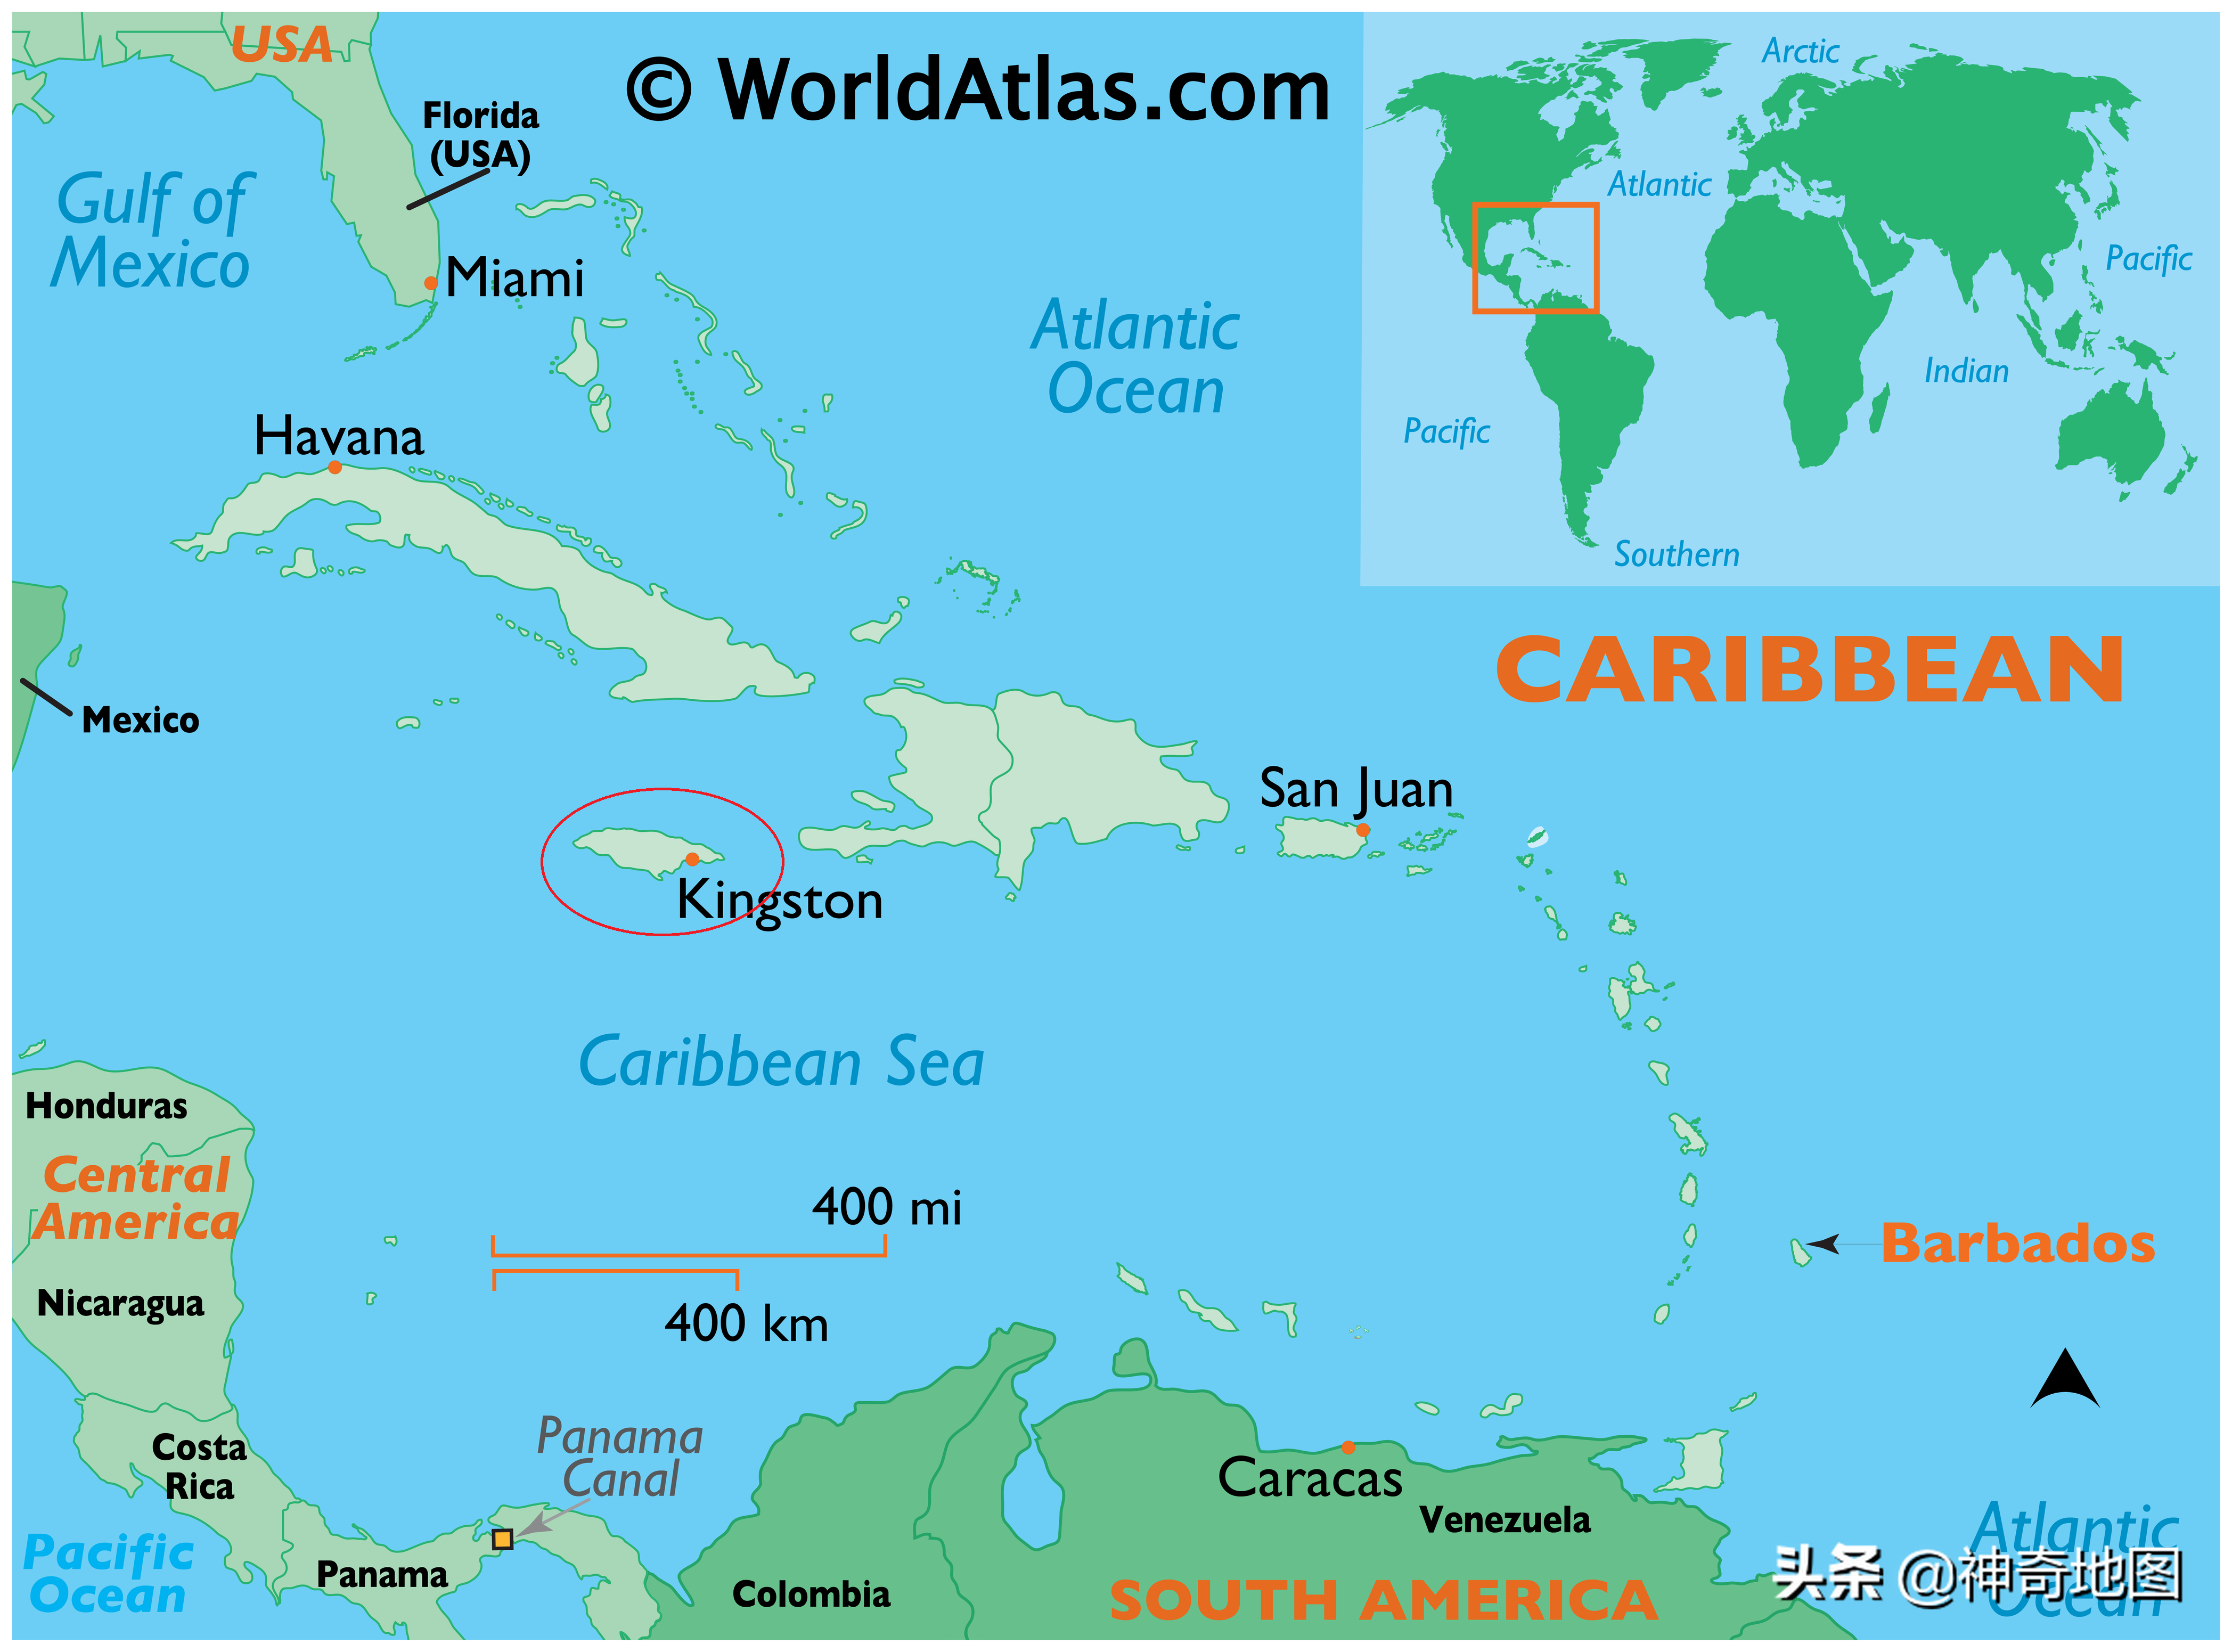 牙买加在地图上的位置图片